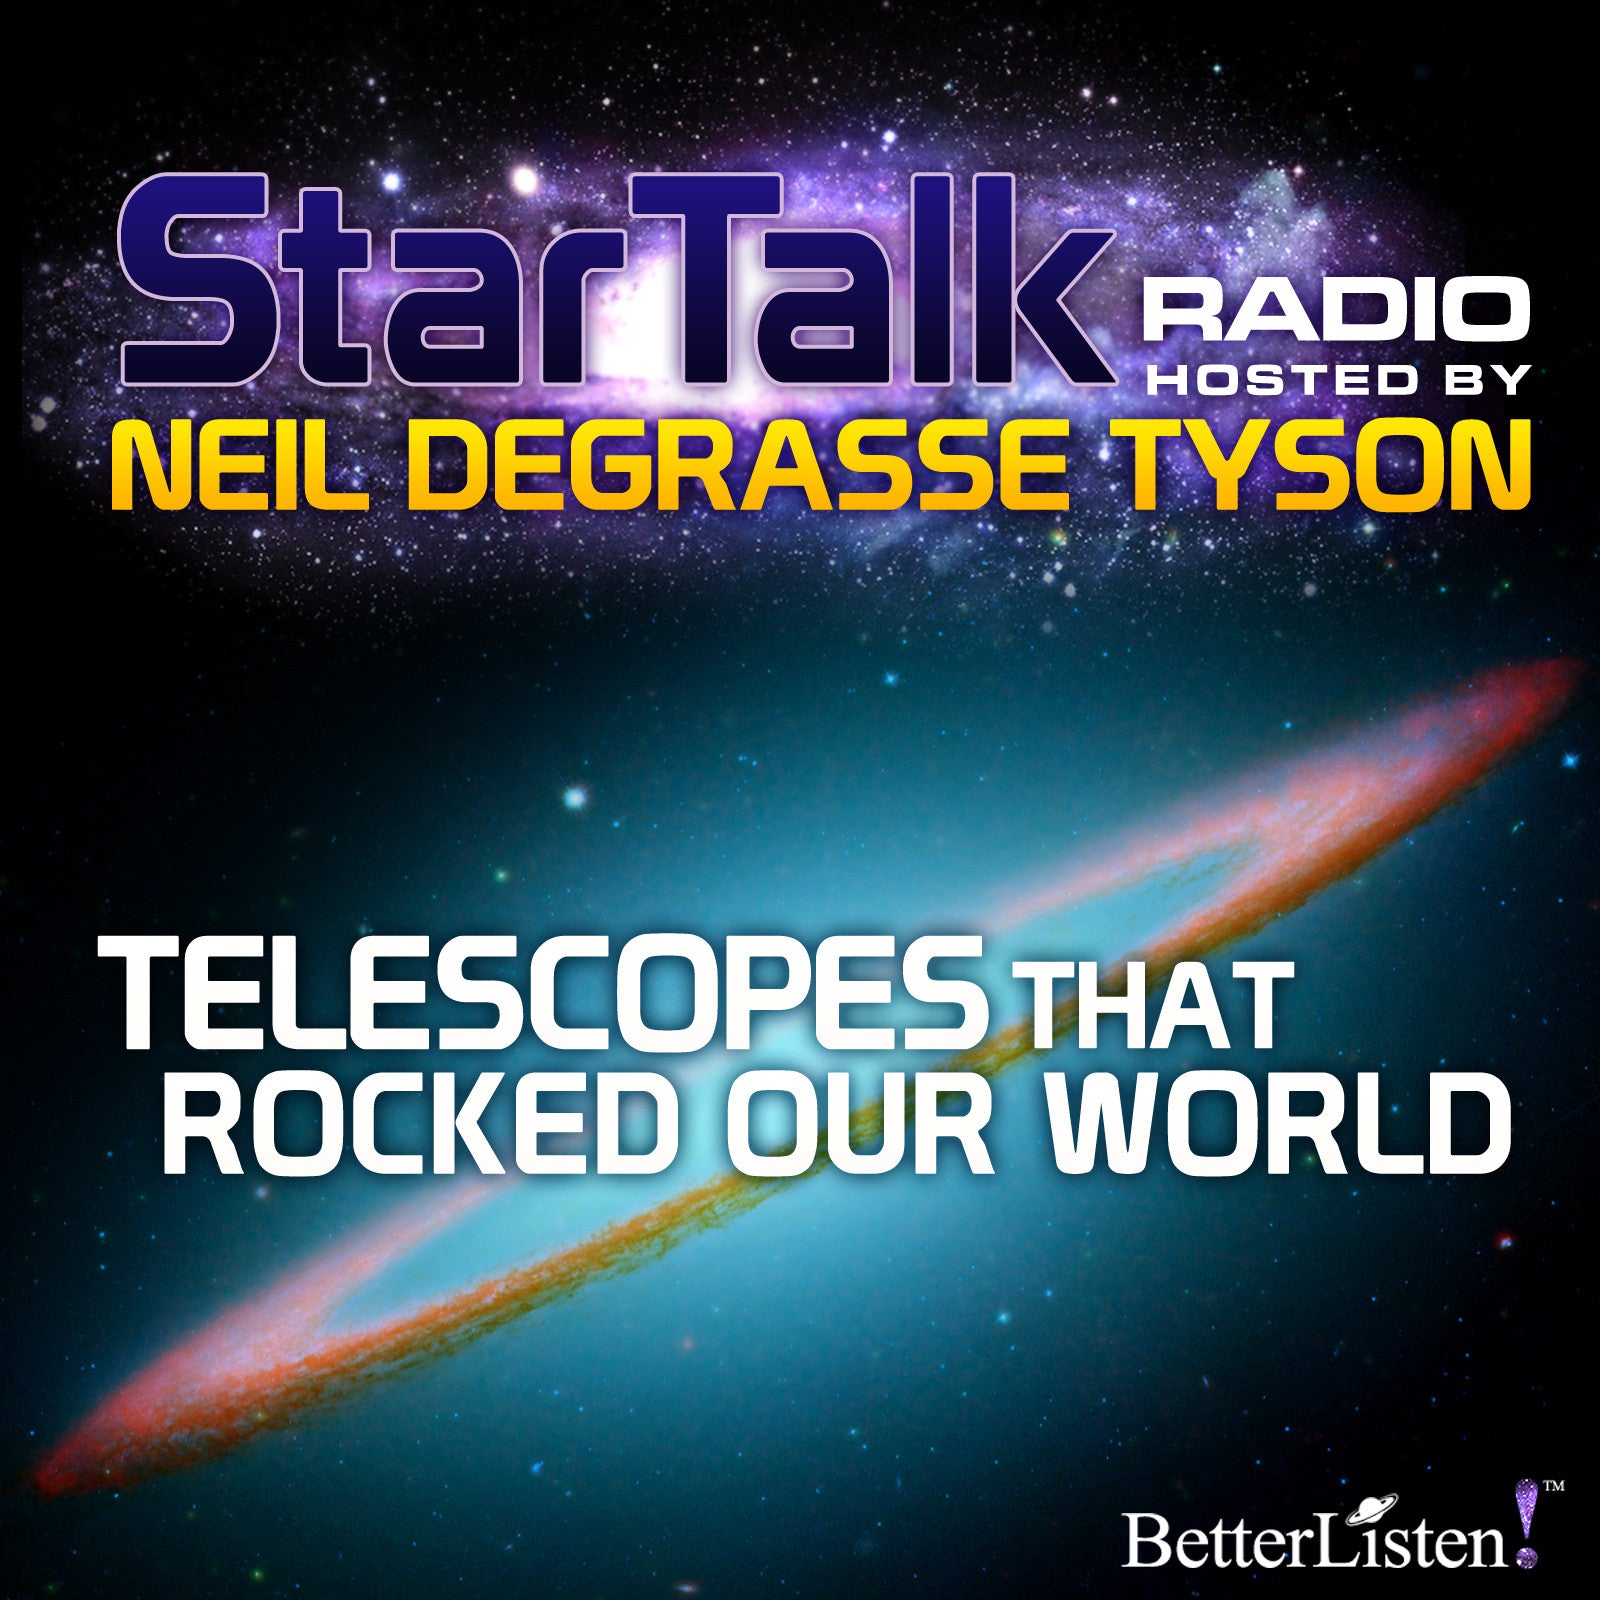 Telescopes that Rocked Our World hosted by Neil deGrasse Tyson Audio Program StarTalk - BetterListen!